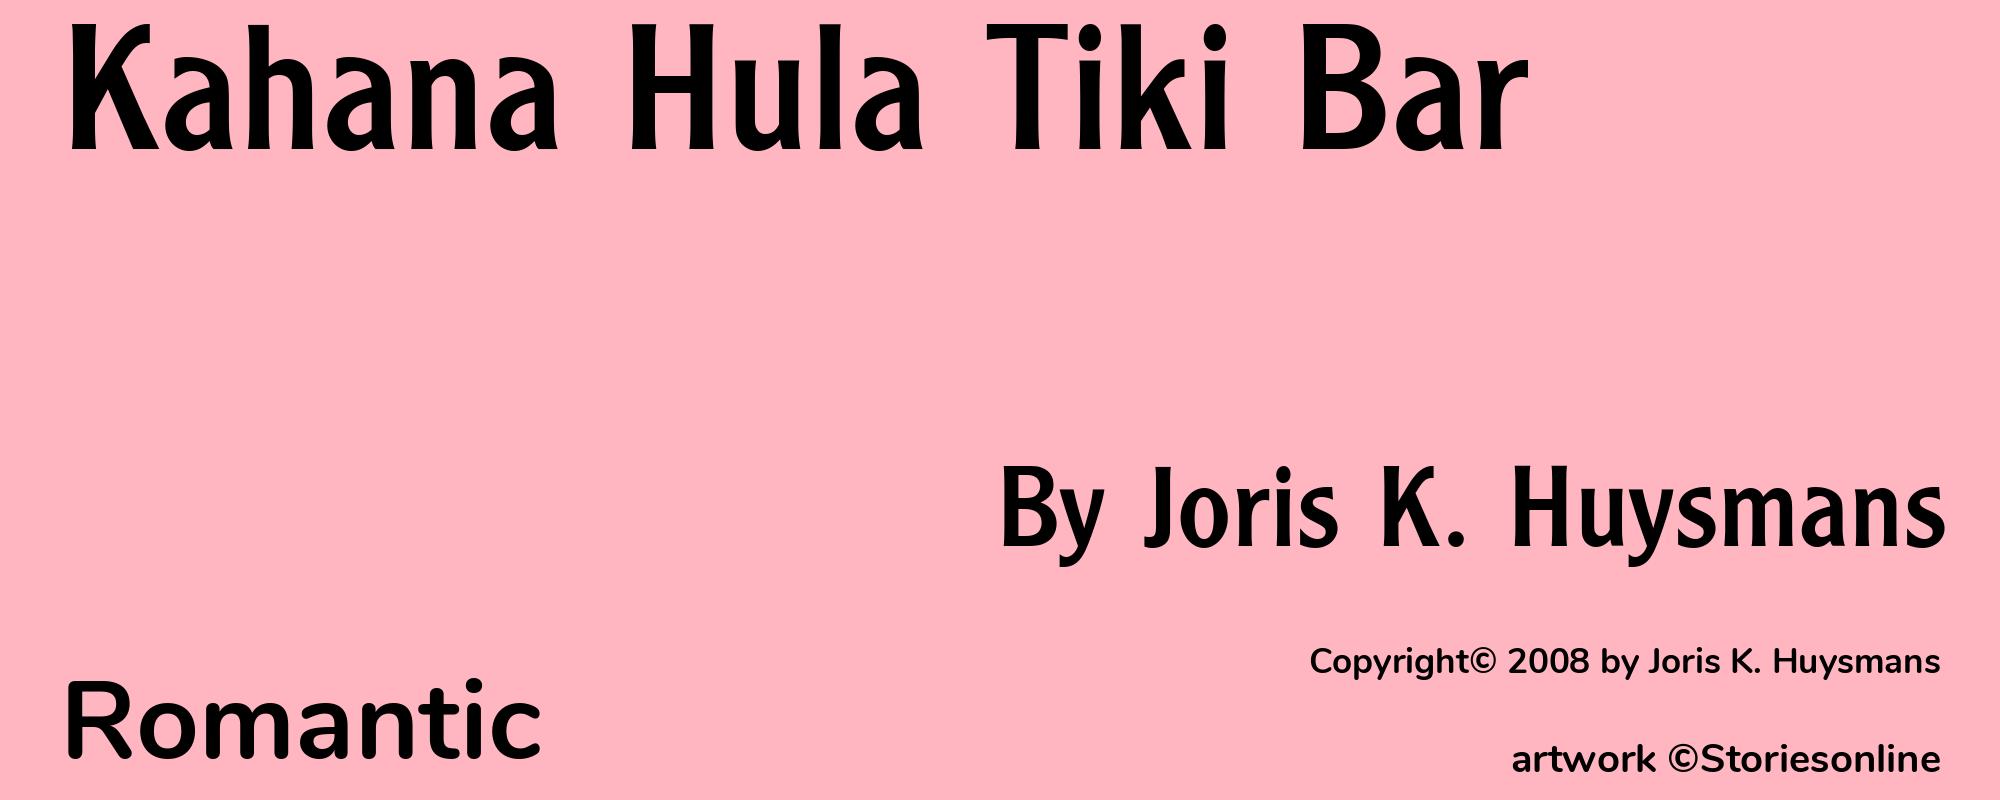 Kahana Hula Tiki Bar - Cover